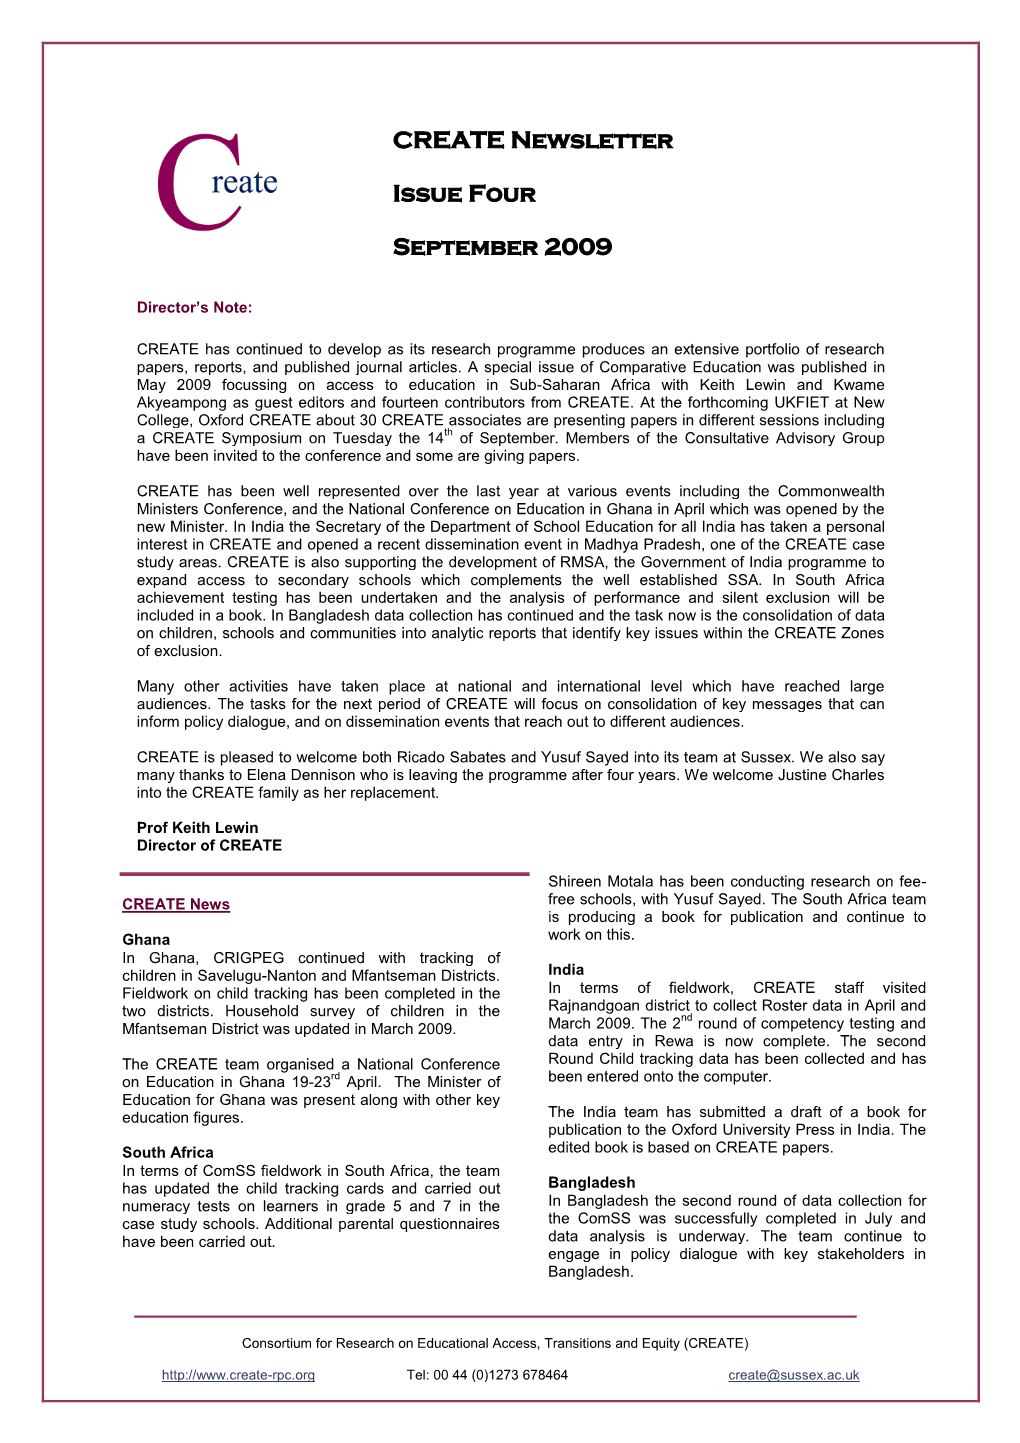 CREATE Newsletter Issue 4, September 2009